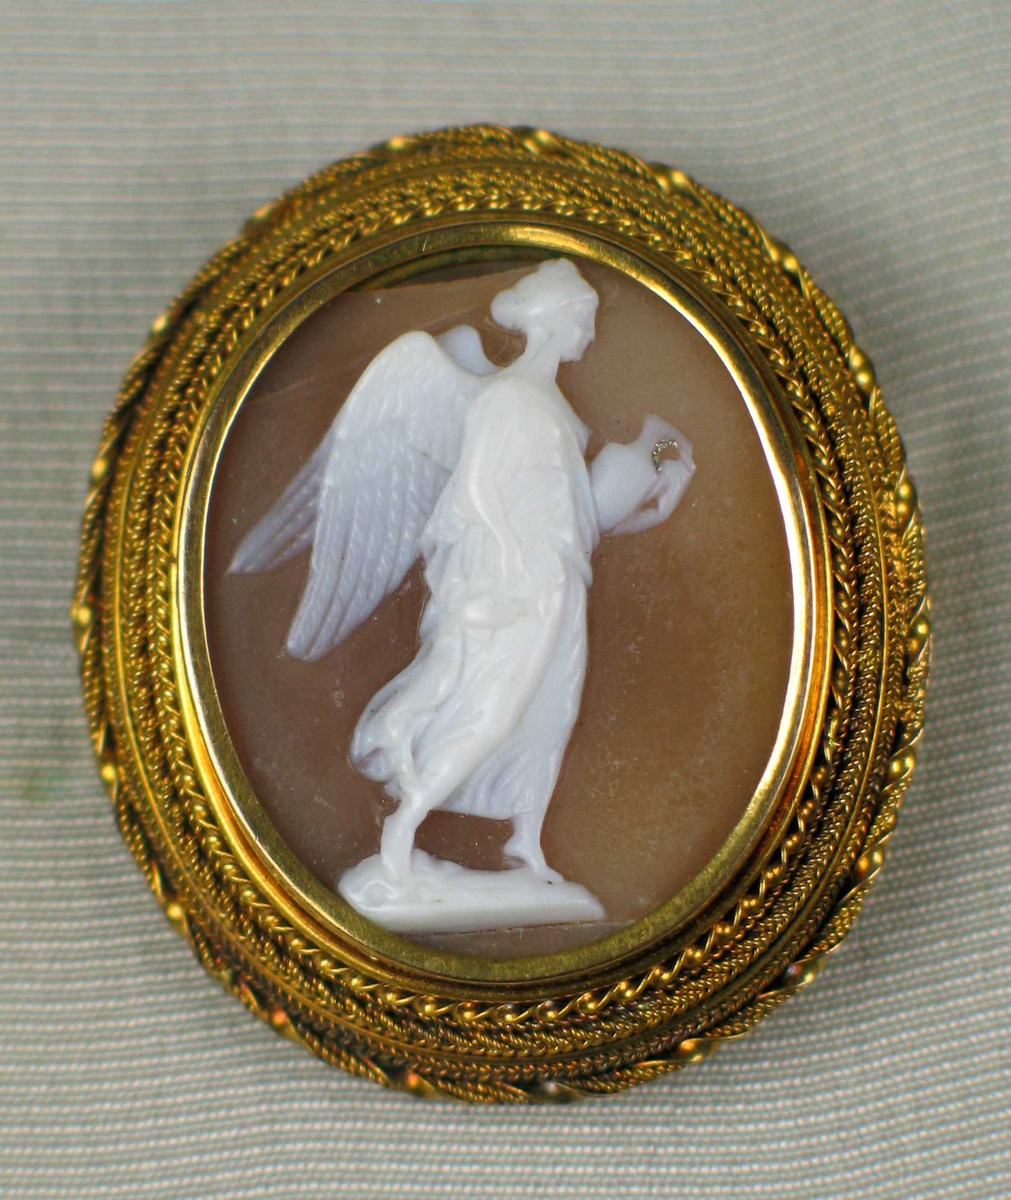 Kamè/medaljong innfattet gull som består av sirlige filigransborder. I midten en utskåret hvit engel som bærer en krukke.